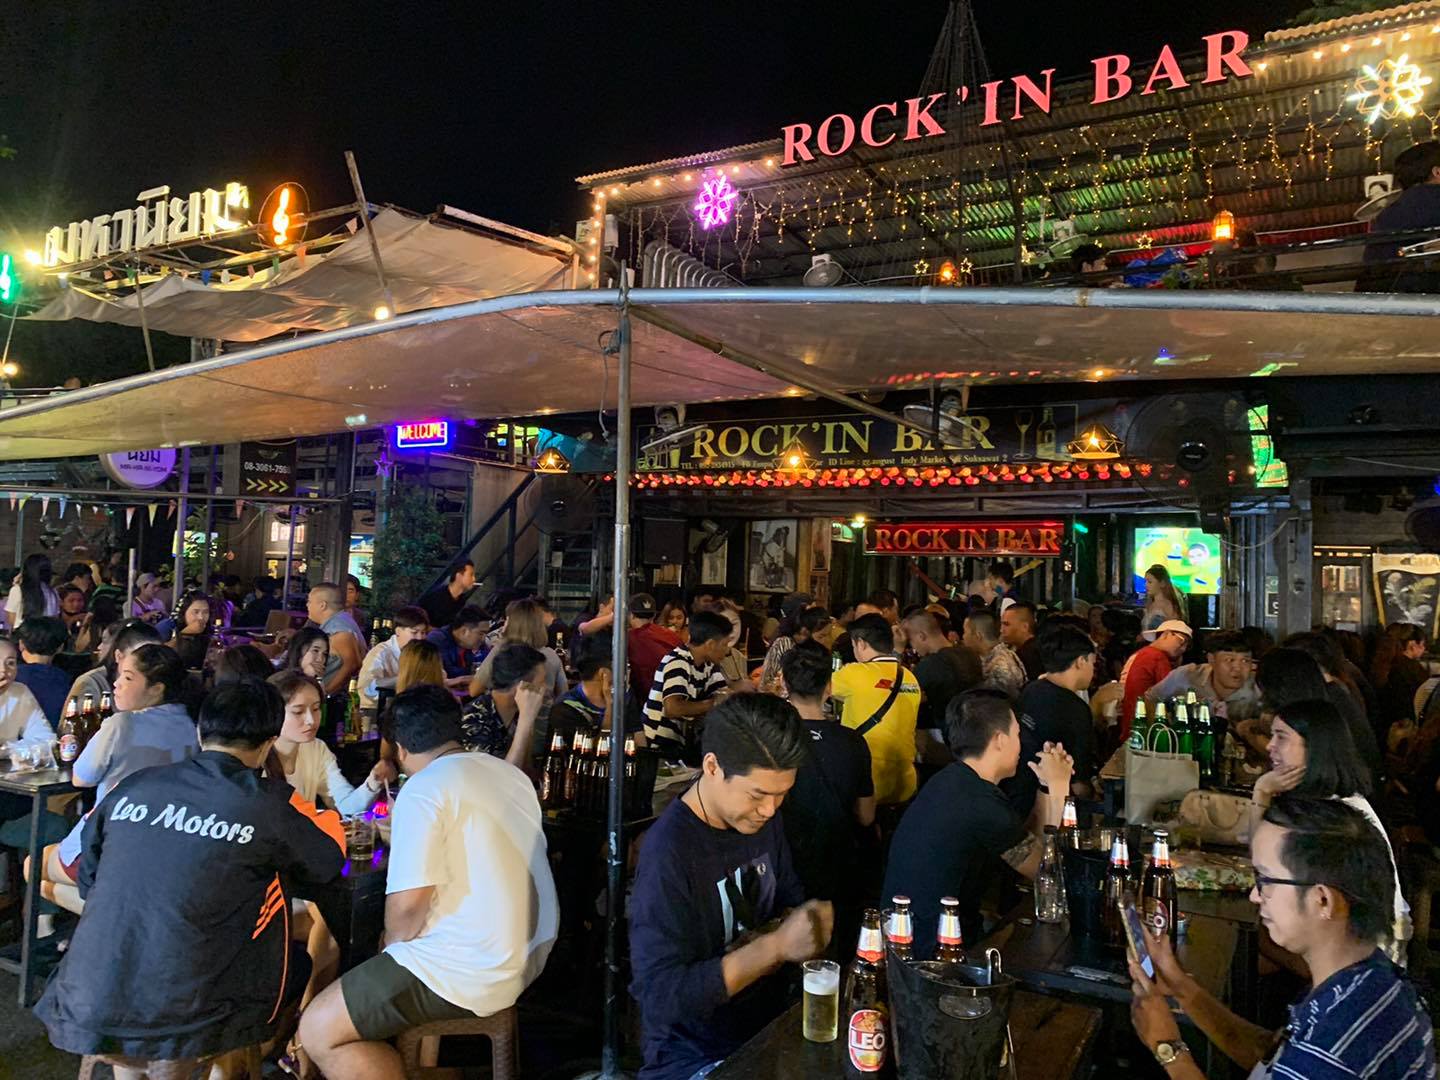 Rock in bar ตลาดอินดี้ (Rock in bar) : กรุงเทพมหานคร (Bangkok)